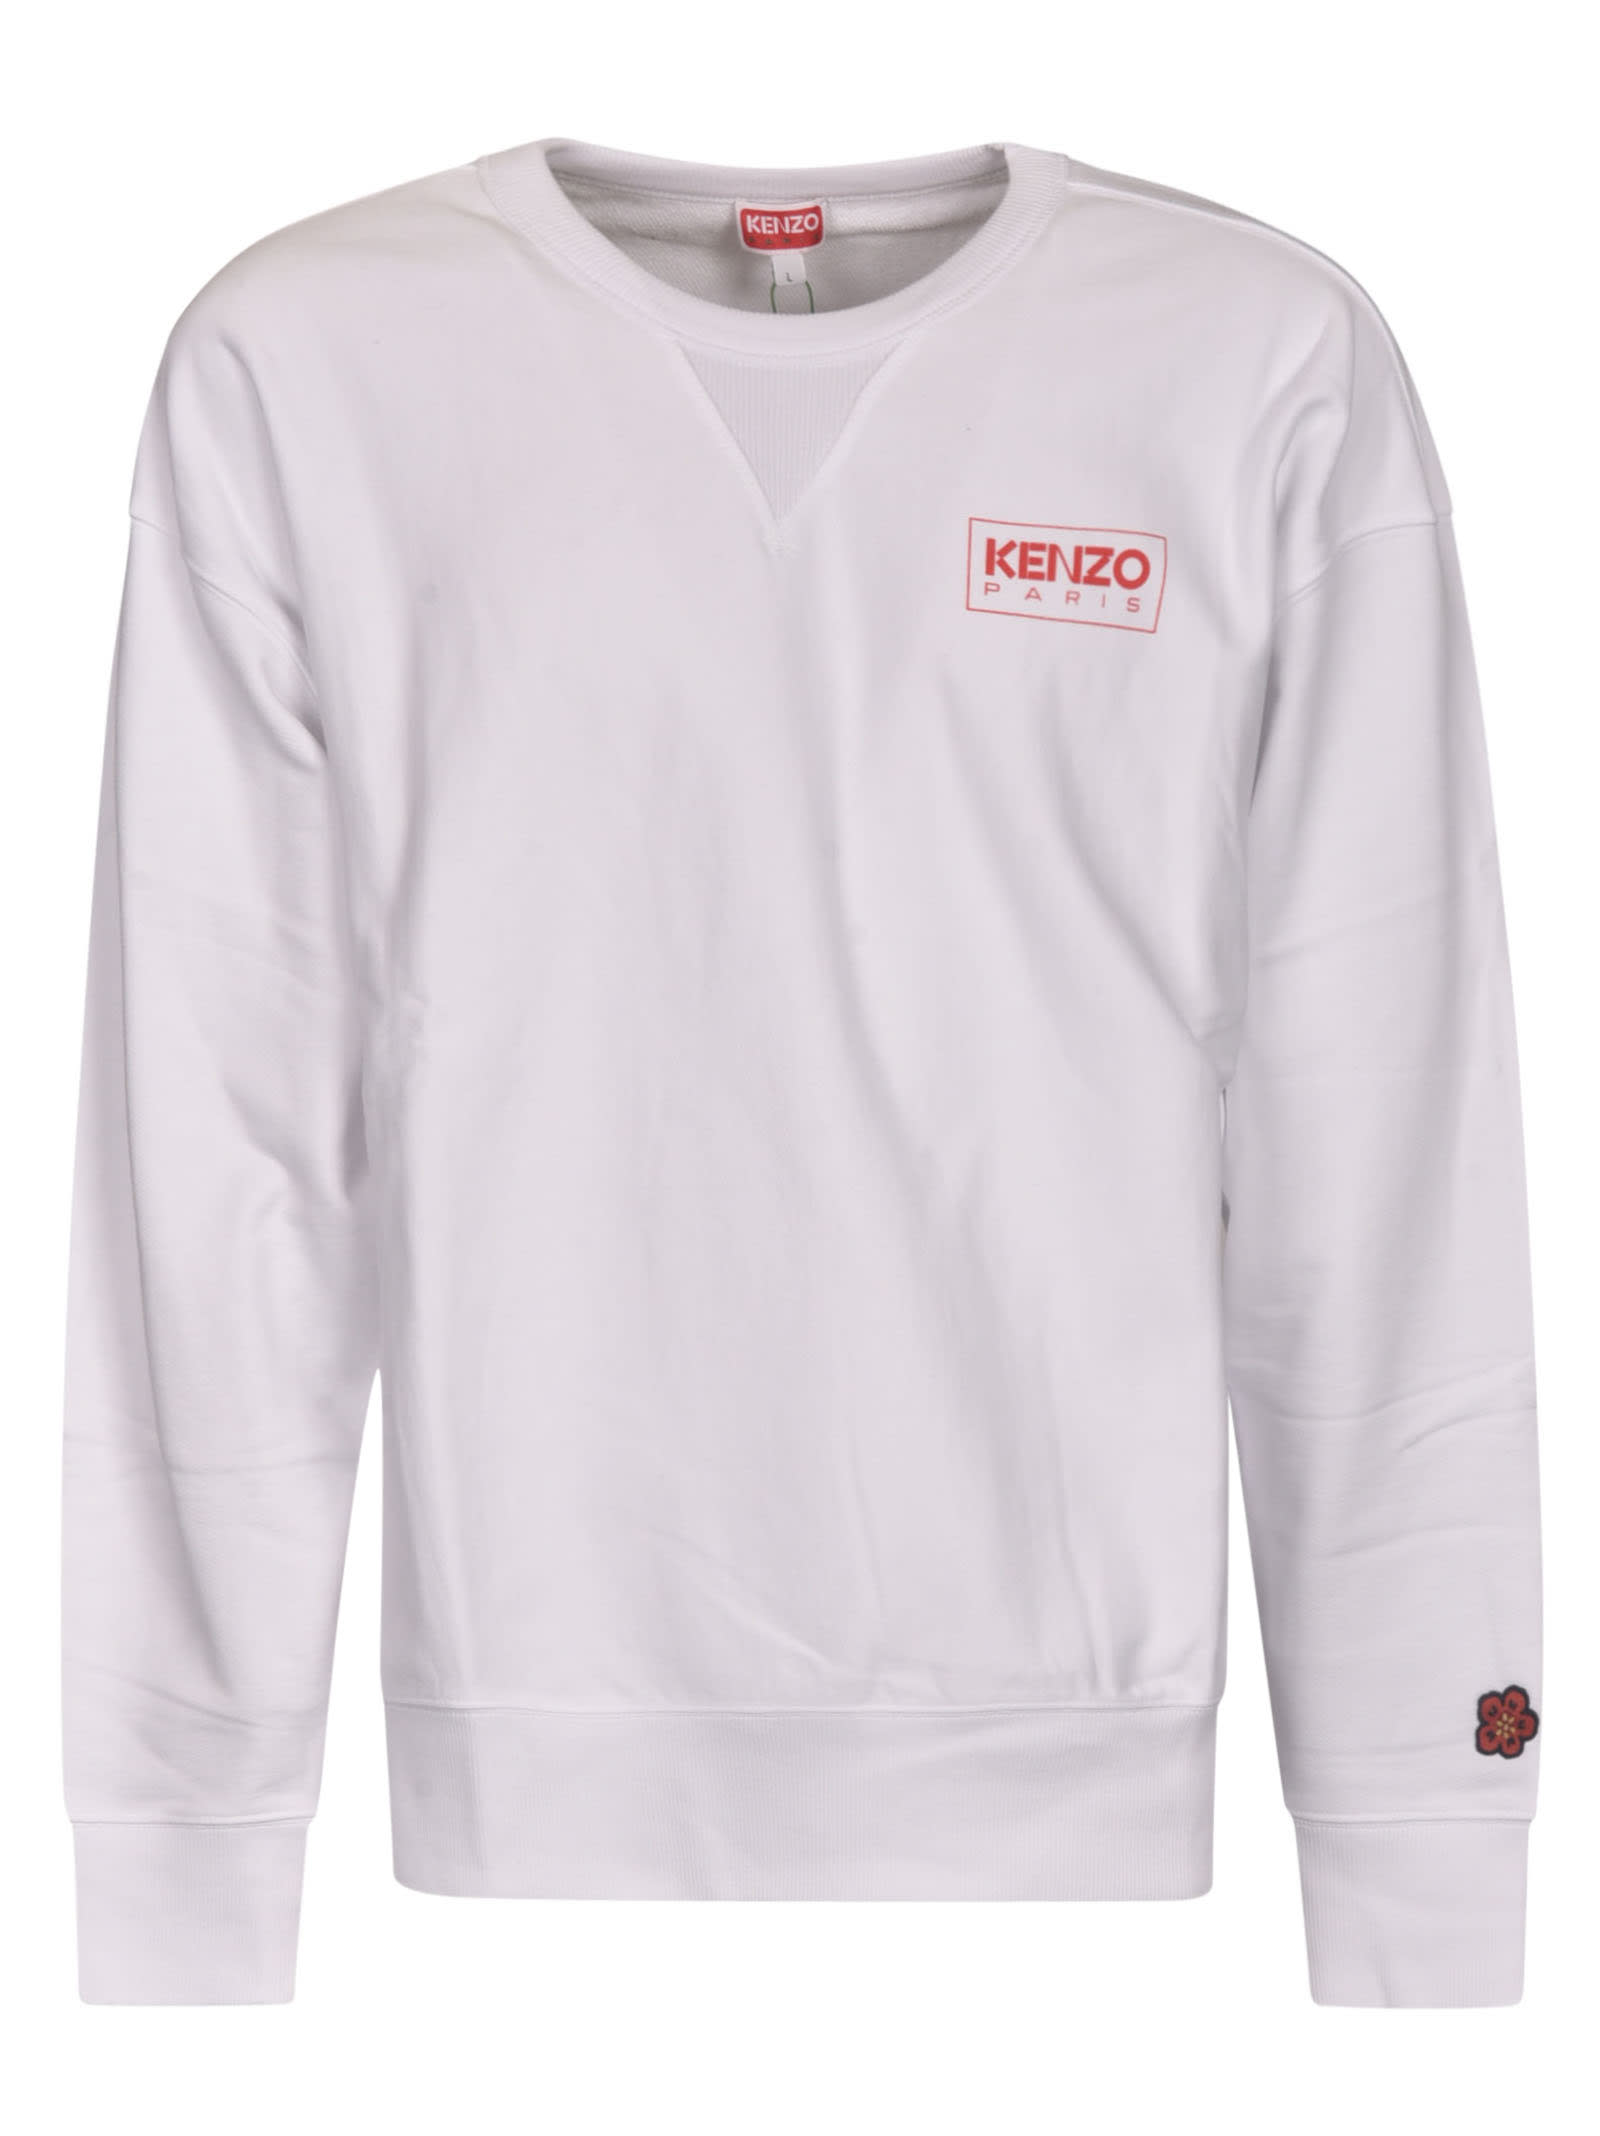 Kenzo Fleece Sweatshirt